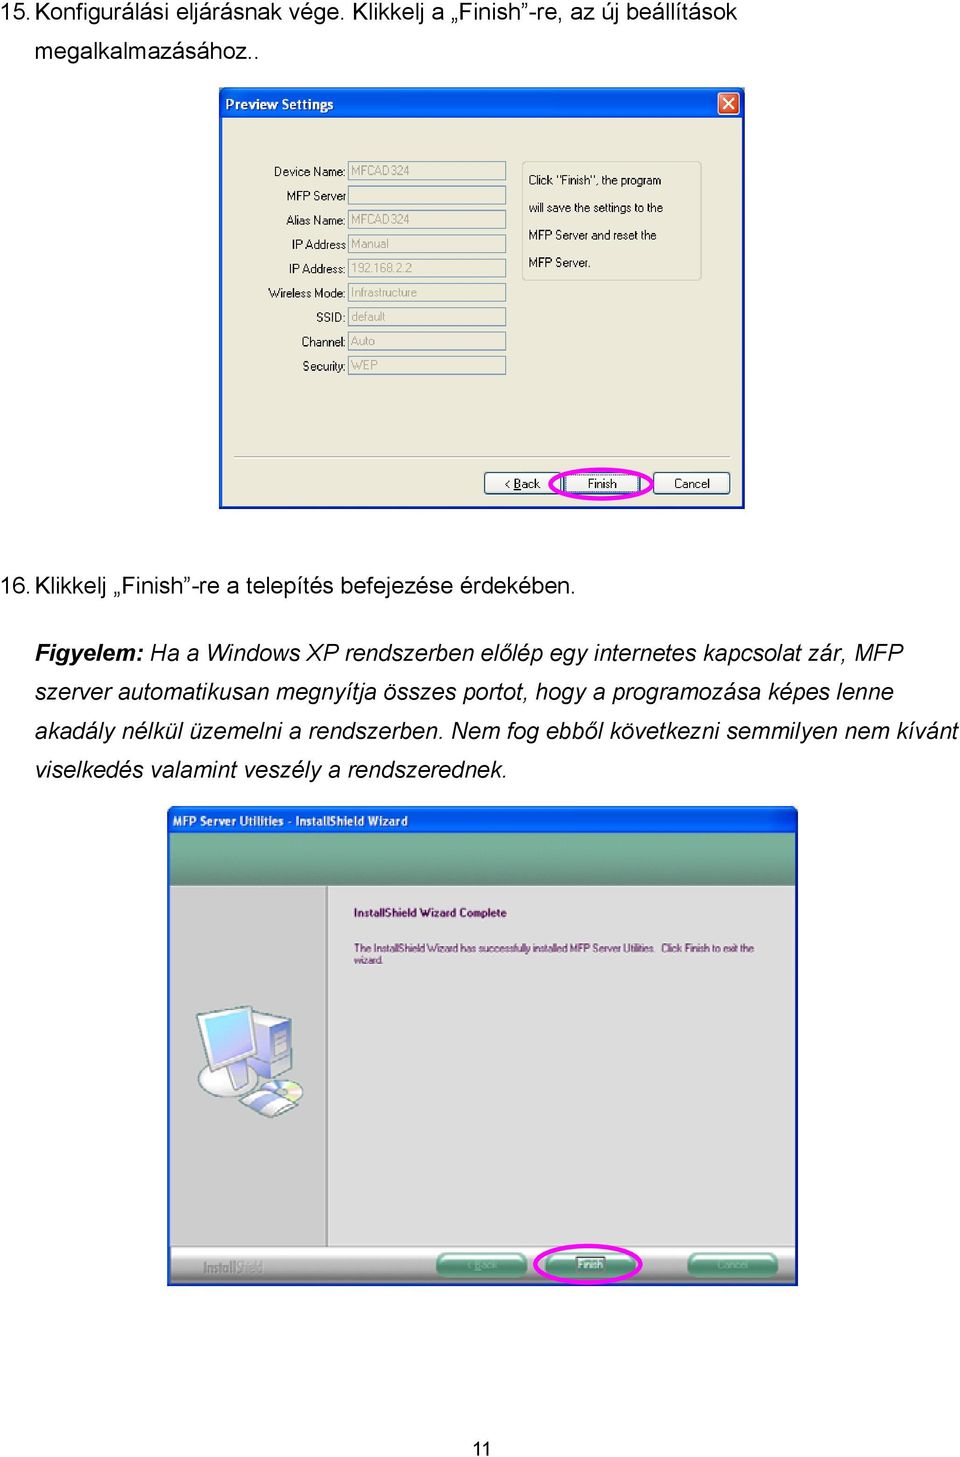 Figyelem: Ha a Windows XP rendszerben előlép egy internetes kapcsolat zár, MFP szerver automatikusan megnyítja